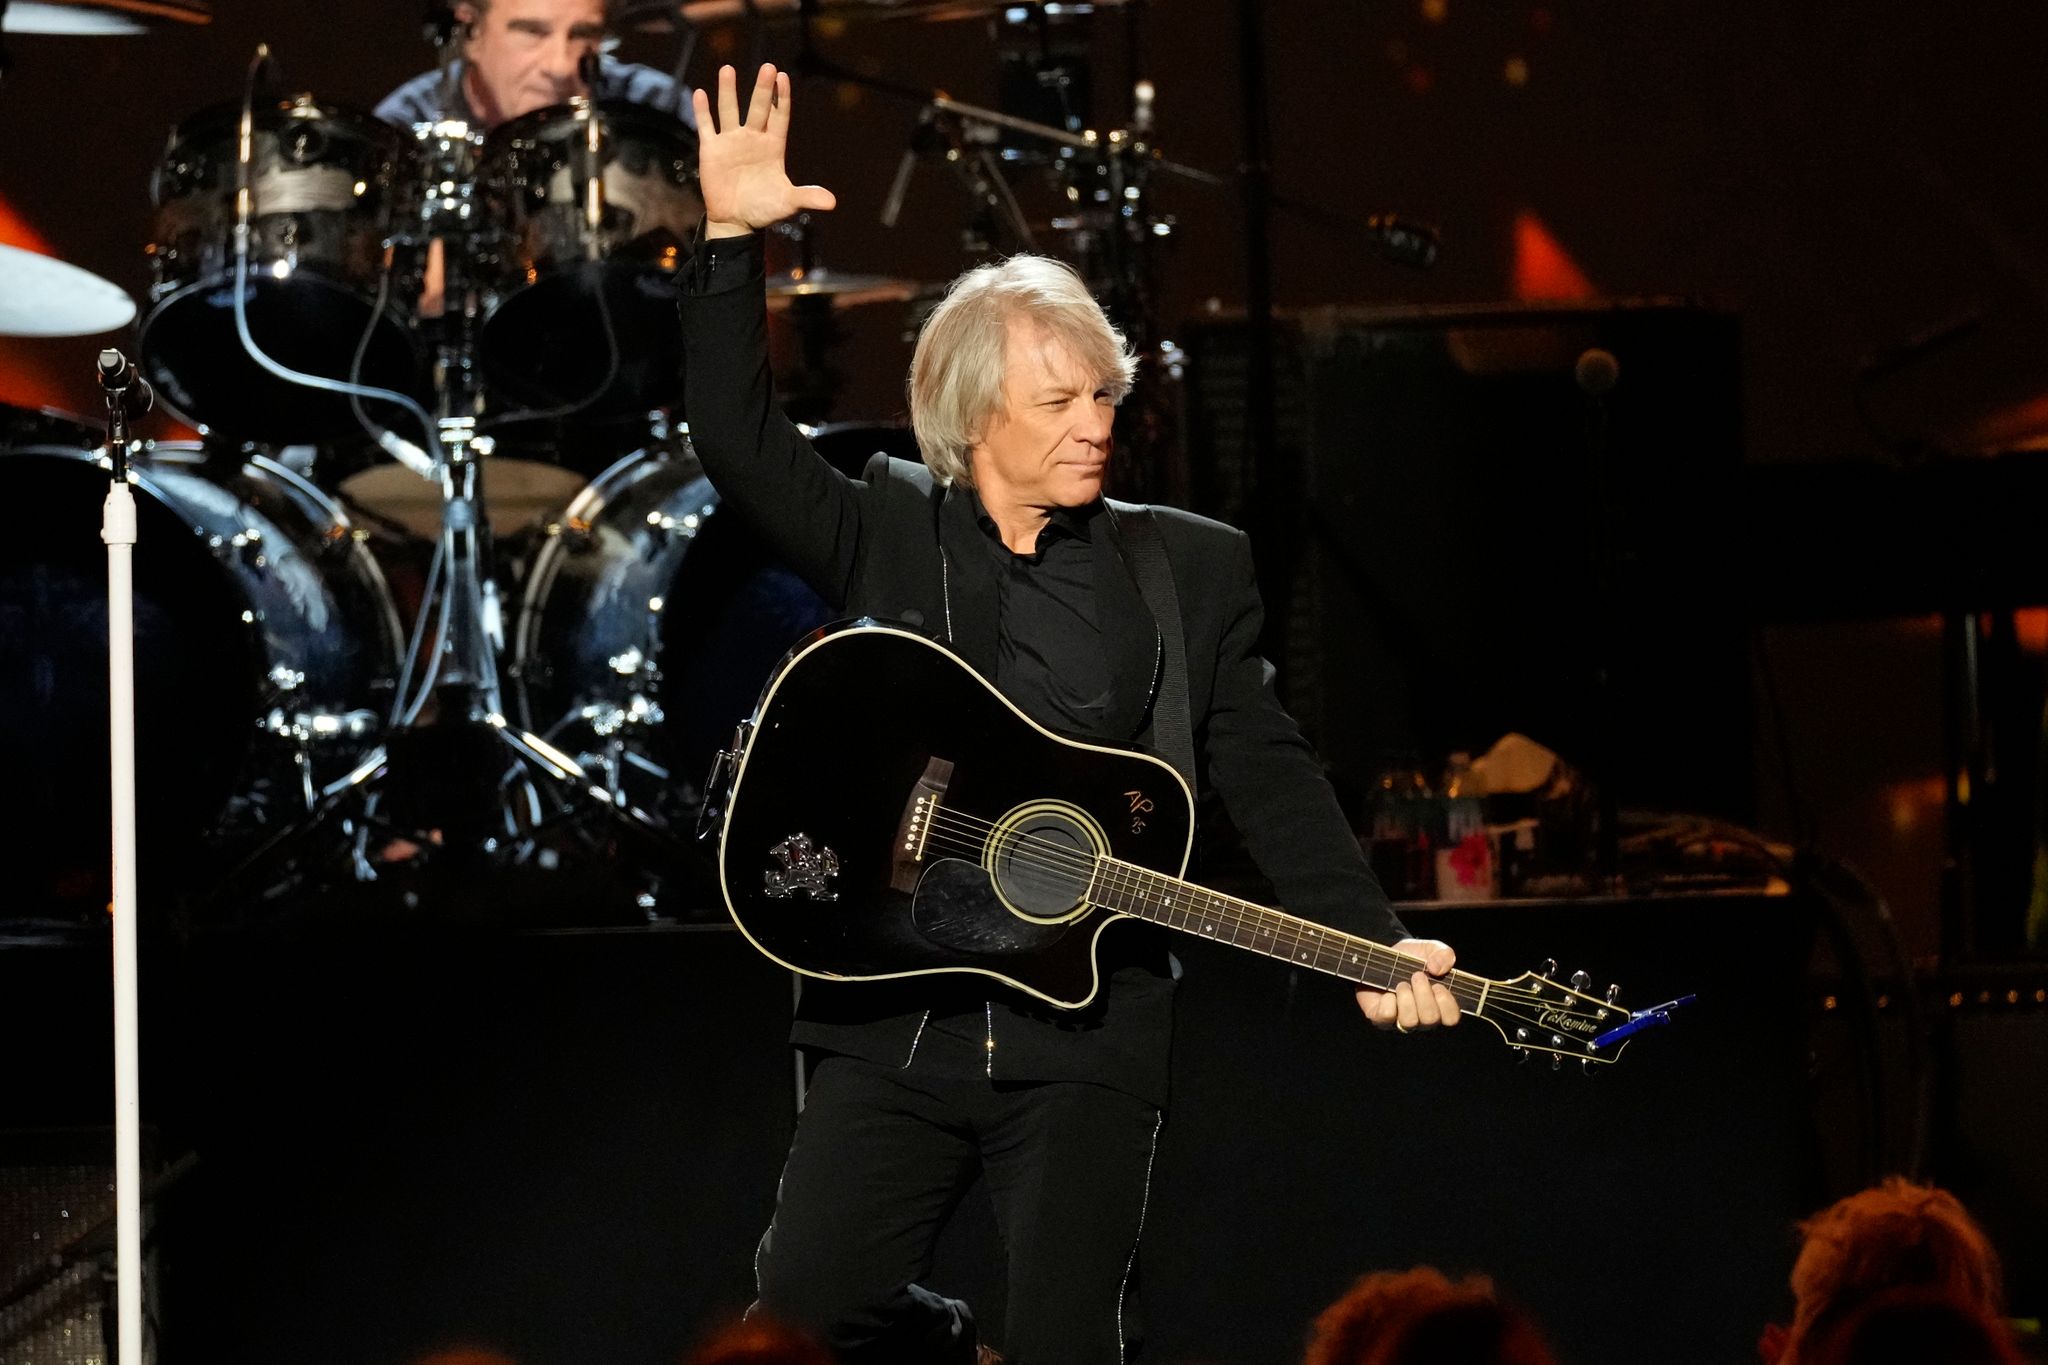 In der Doku-Serie «Thank You, Goodnight: The Bon Jovi Story» blickt Jon Bon Jovi auf seine mehr als 40-jährige Karriere zurück.